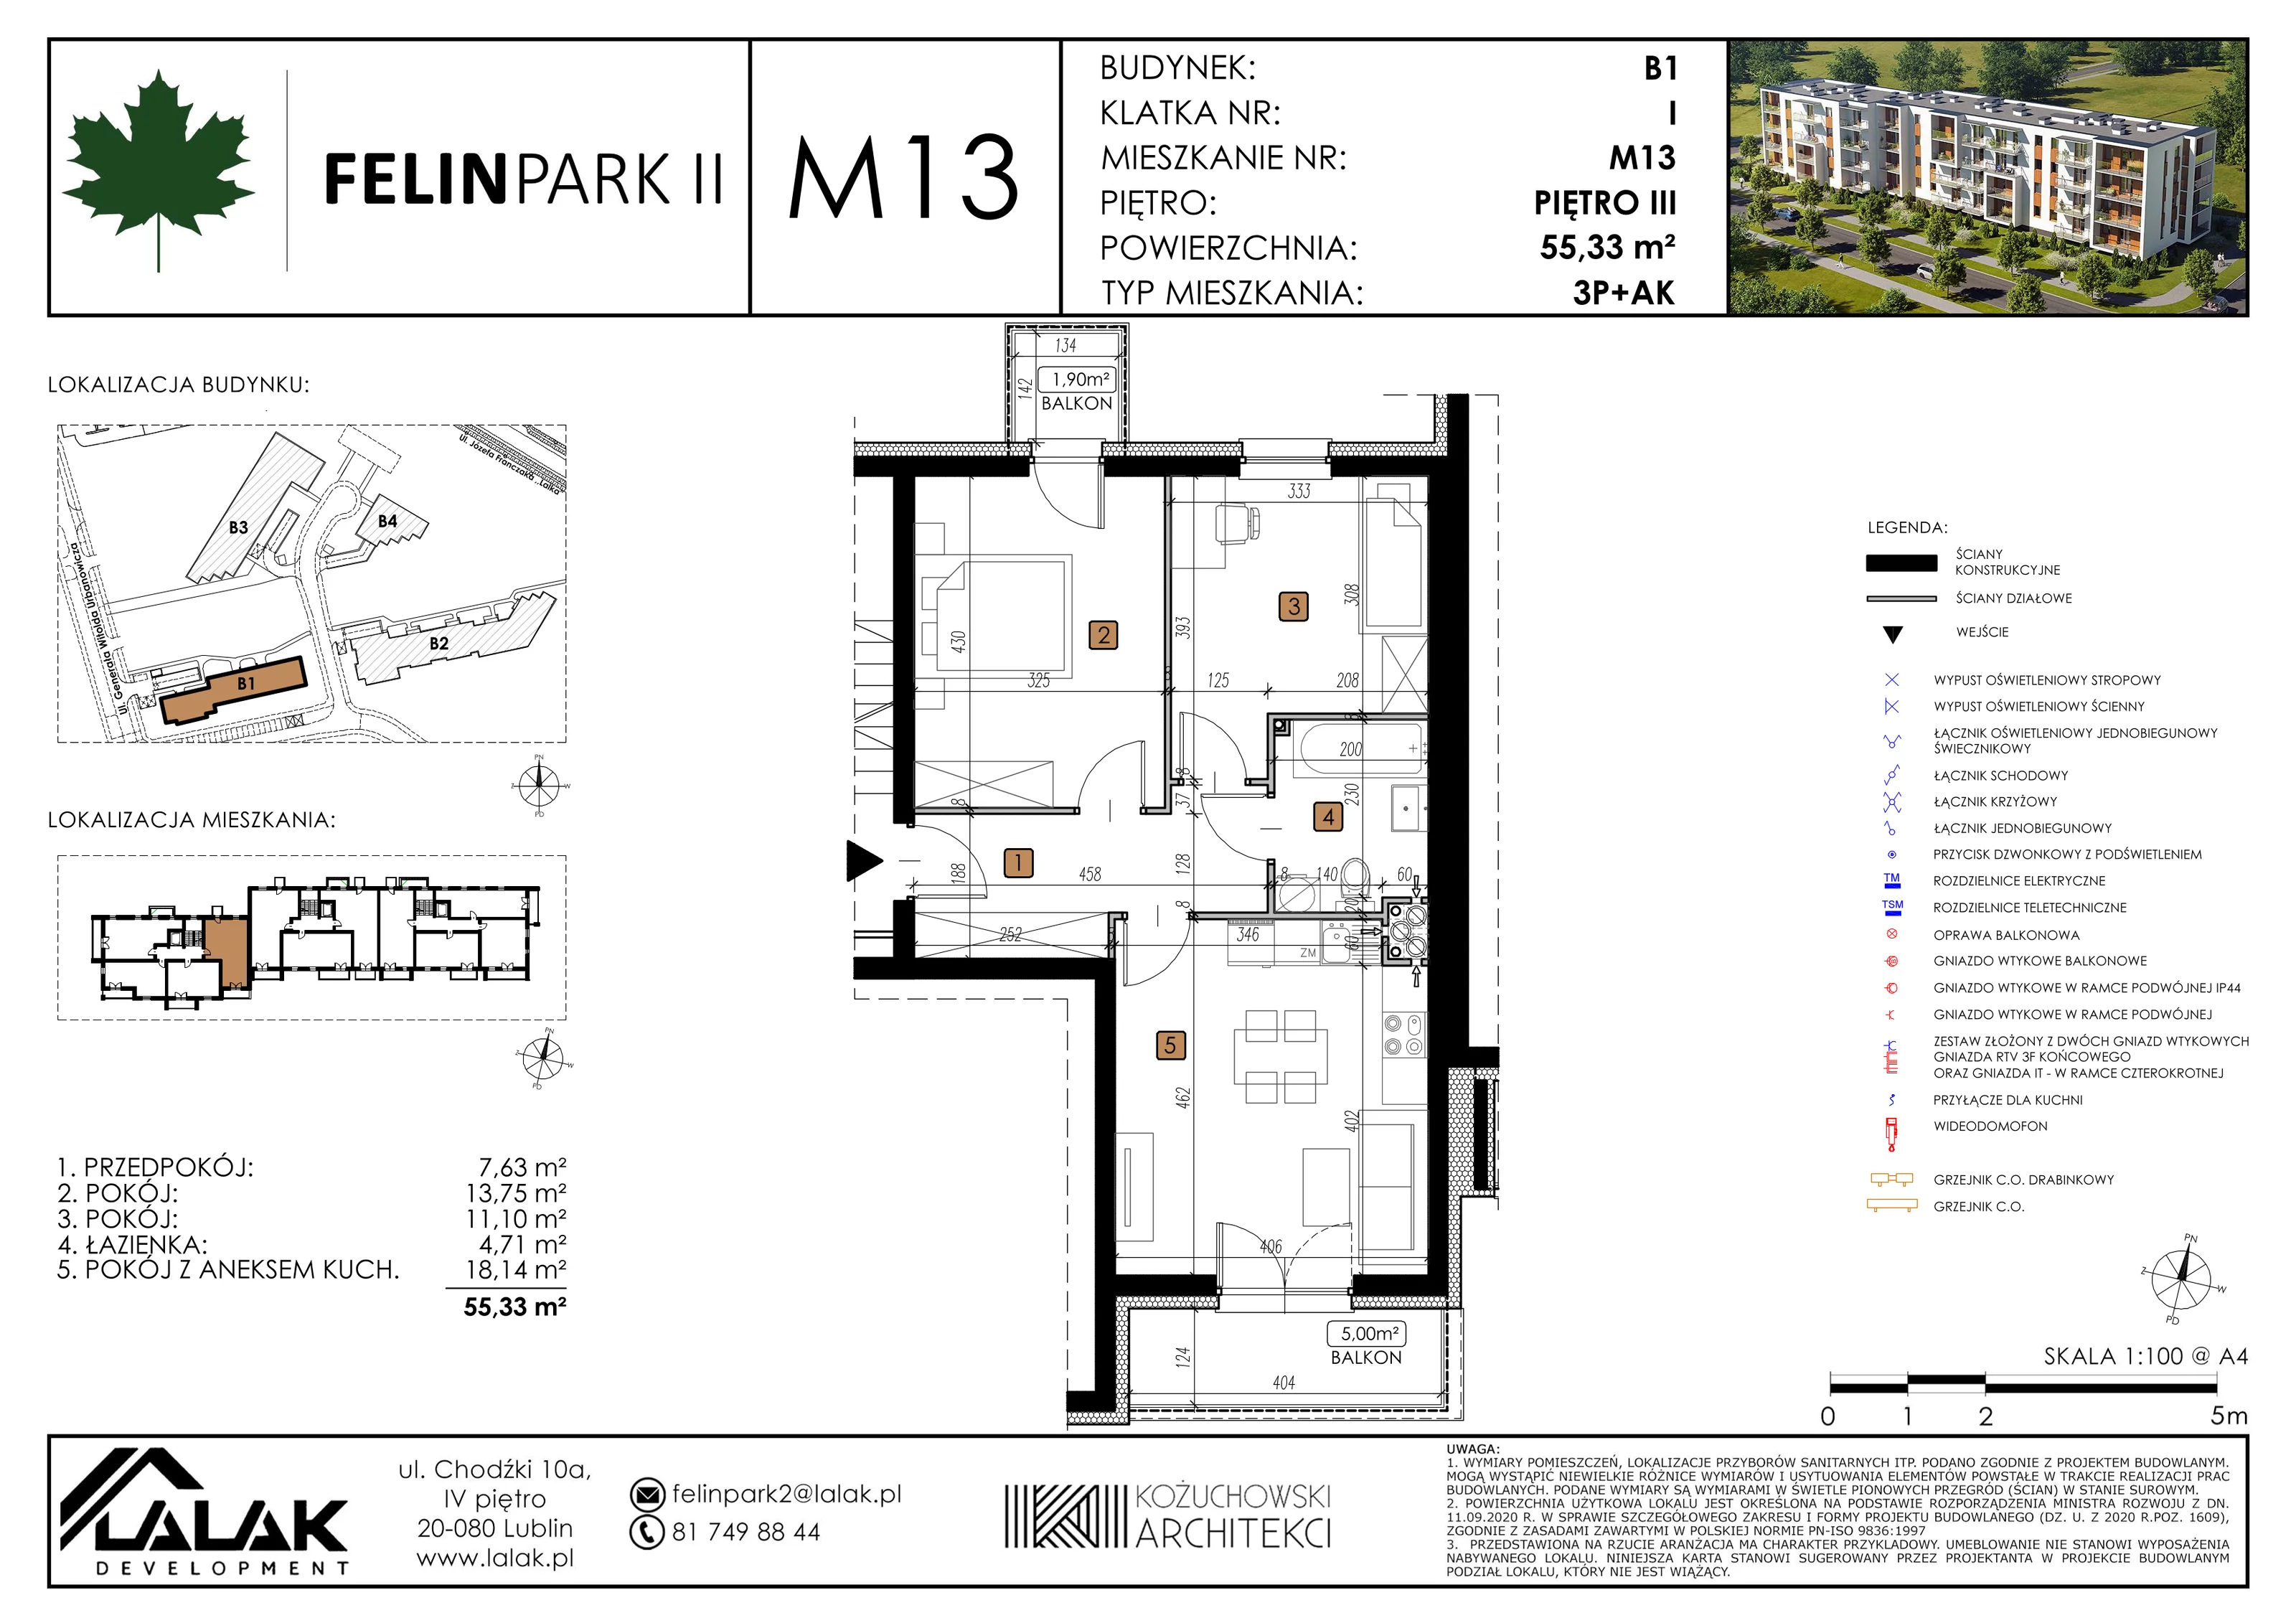 Mieszkanie 55,33 m², piętro 3, oferta nr B1_M13/I, Felin Park II, Lublin, Felin, ul. gen. Stanisława Skalskiego 8-10